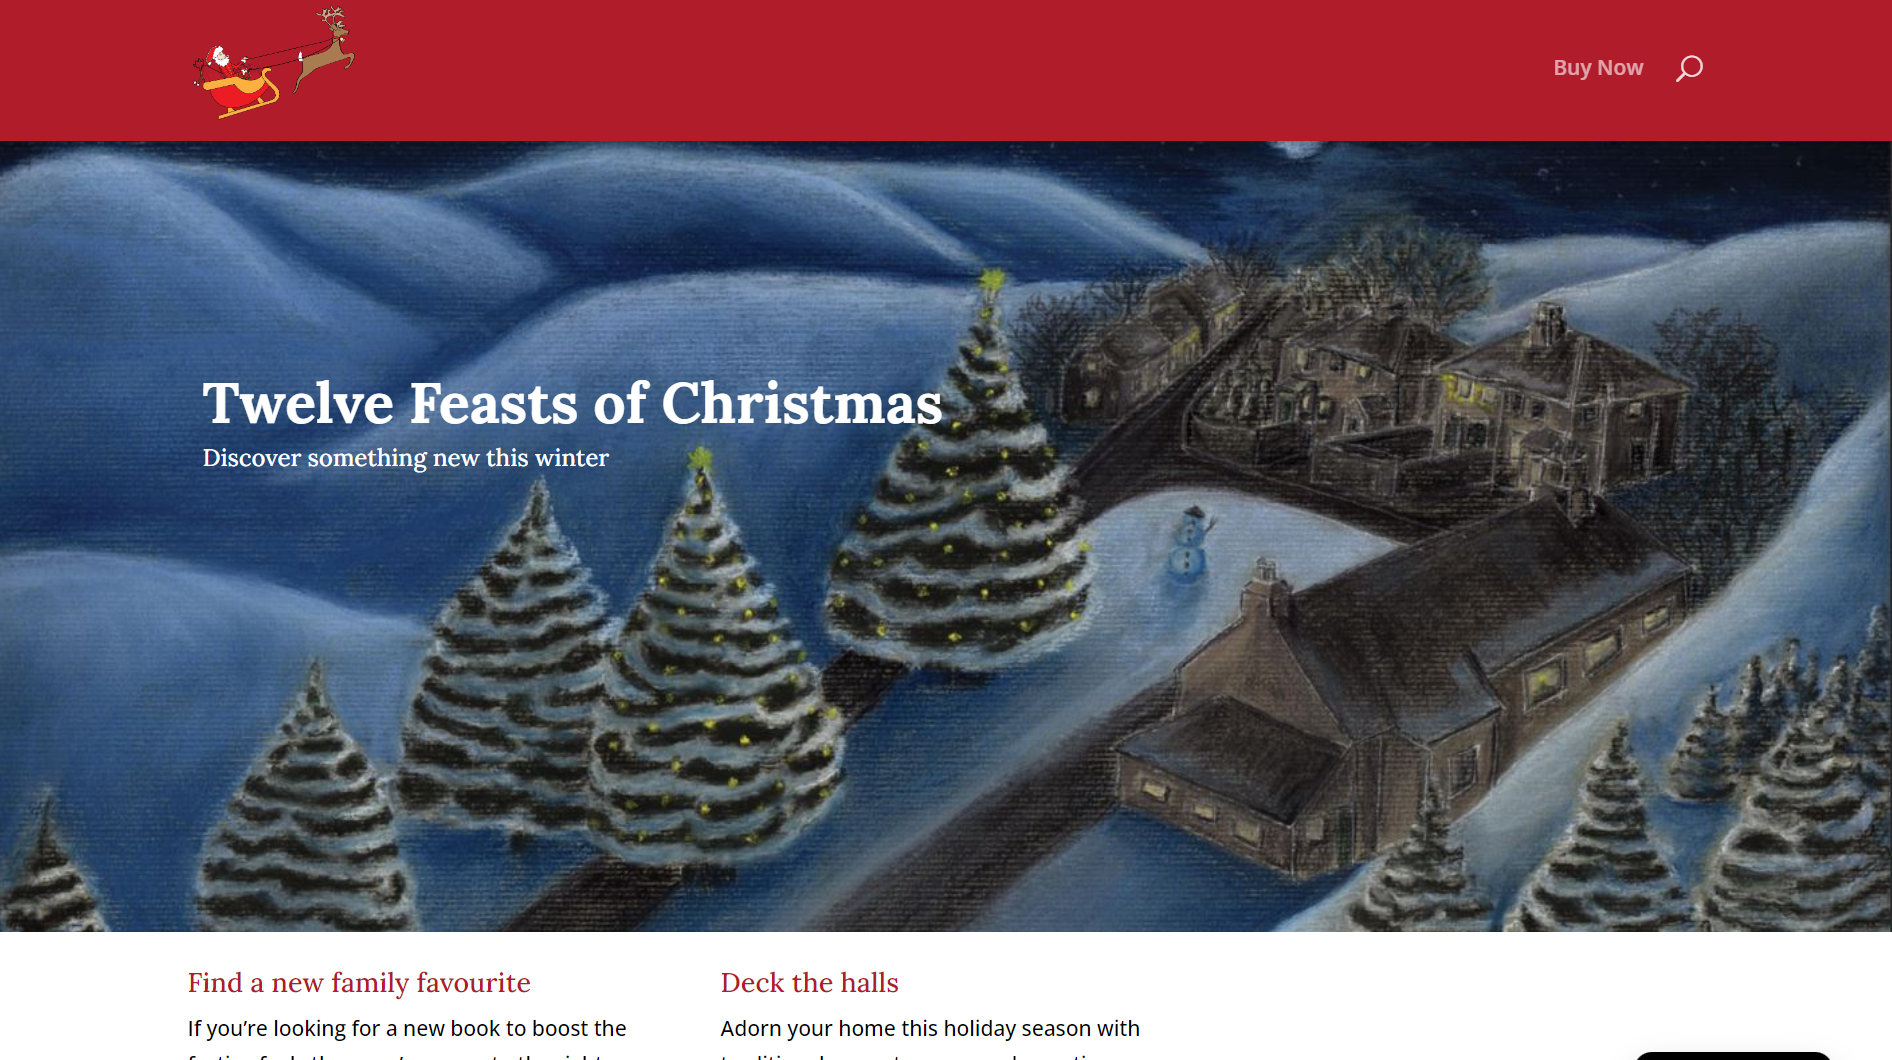 Twelve Feasts of Christmas website design